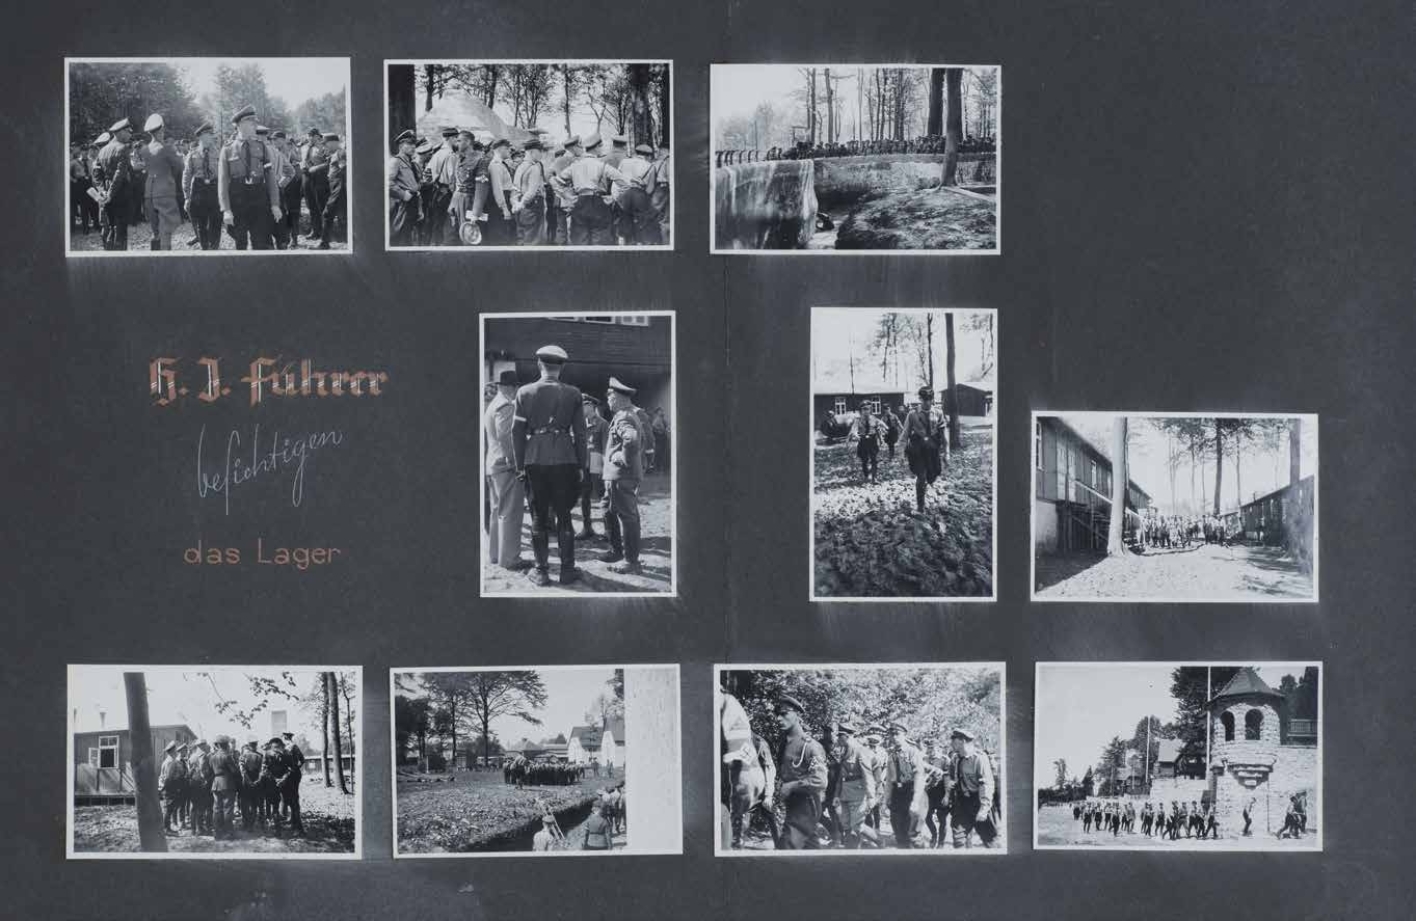 Ausschnitt aus Fotoalbum: HJ-Führer besuchen das Lager, mehrere Fotografien